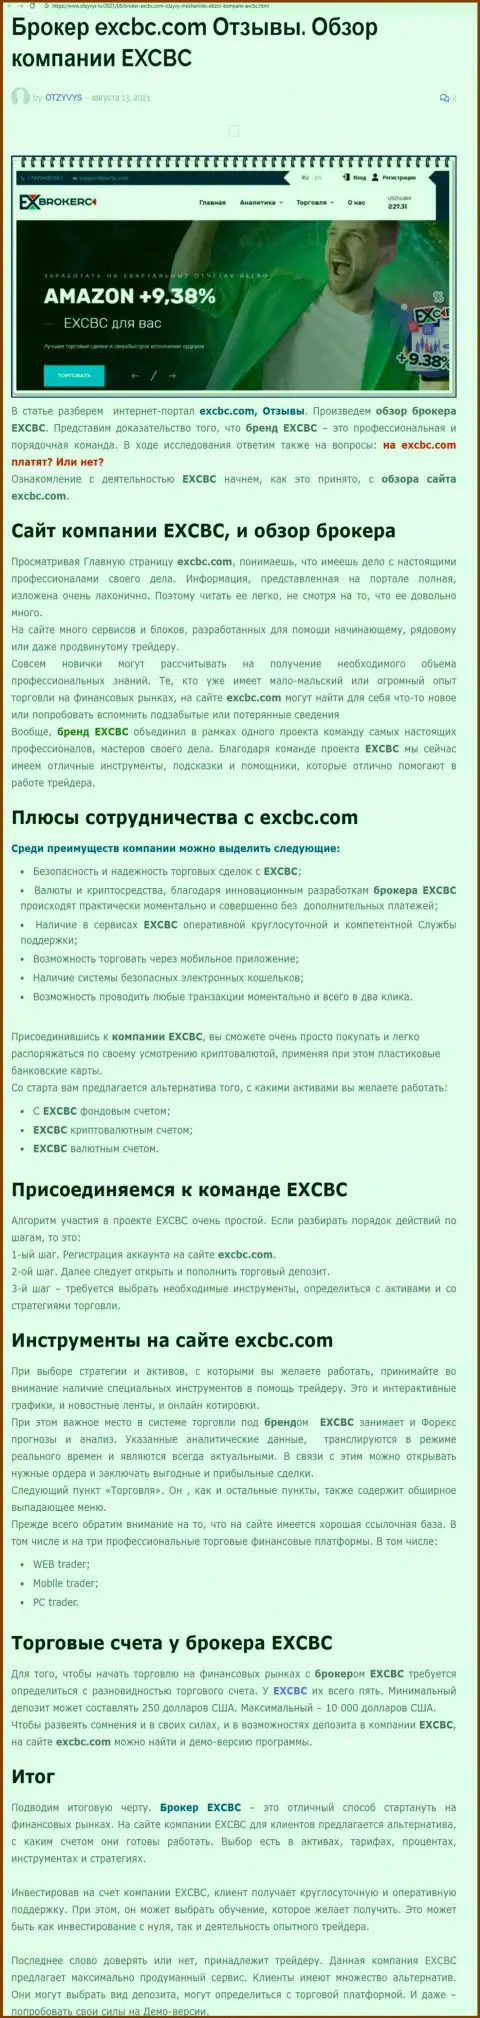 Обзорная статья о ФОРЕКС организации EXCBC на информационном сервисе Отзывс Ру